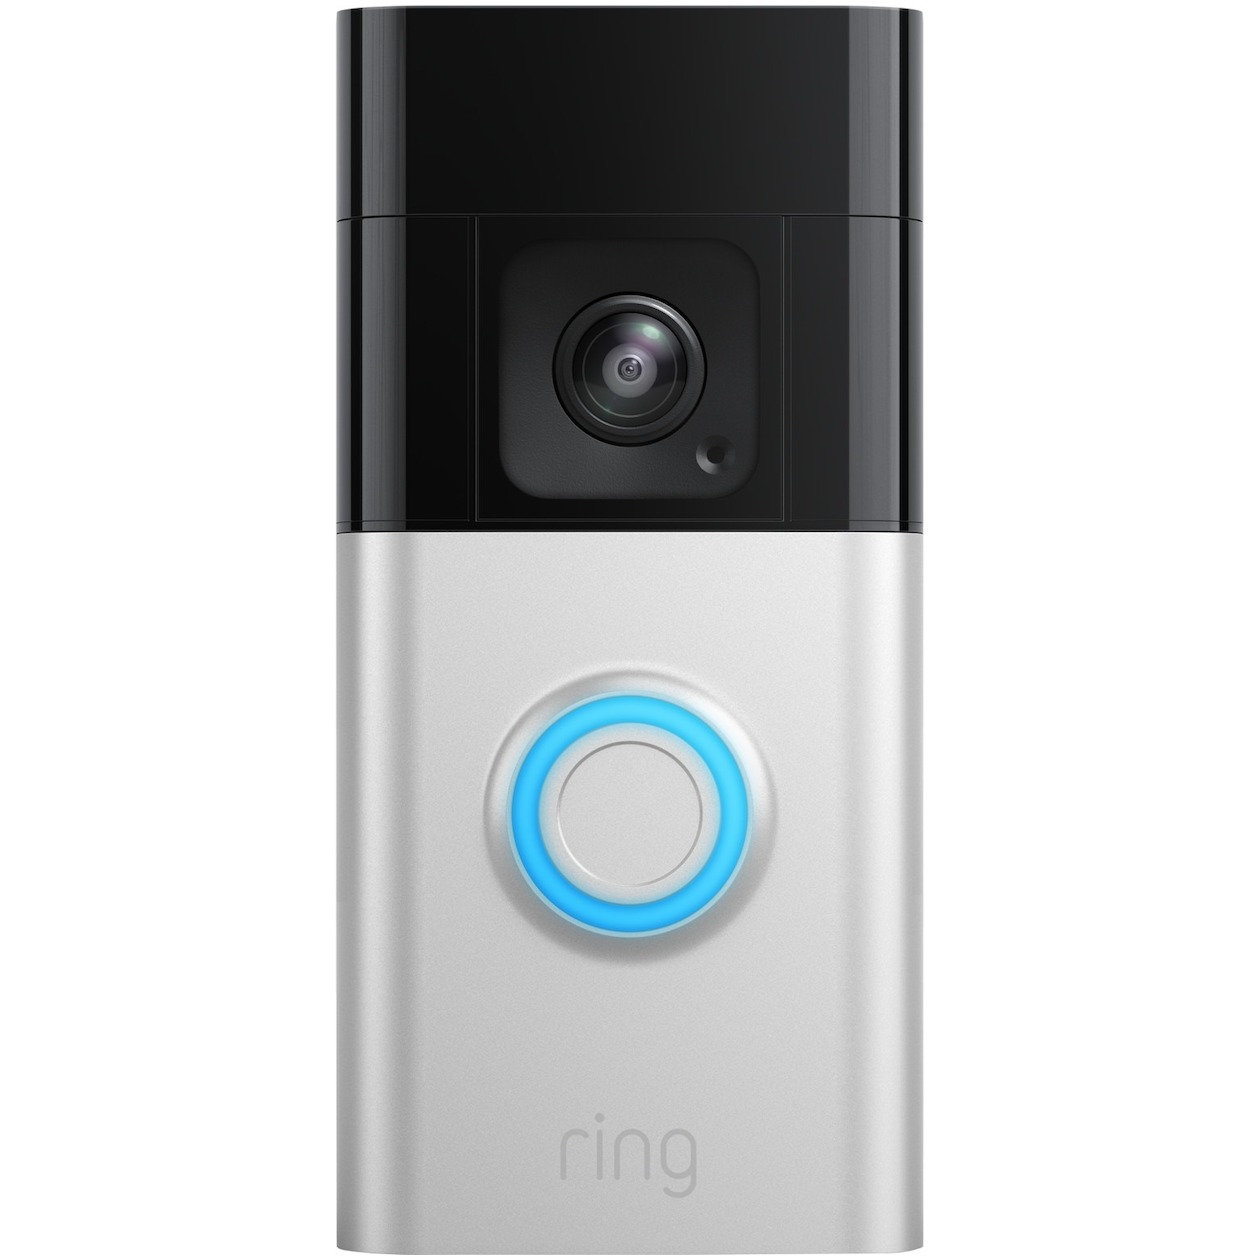 Ring Deurbel Videofoon Battery Video Doorbell Pro